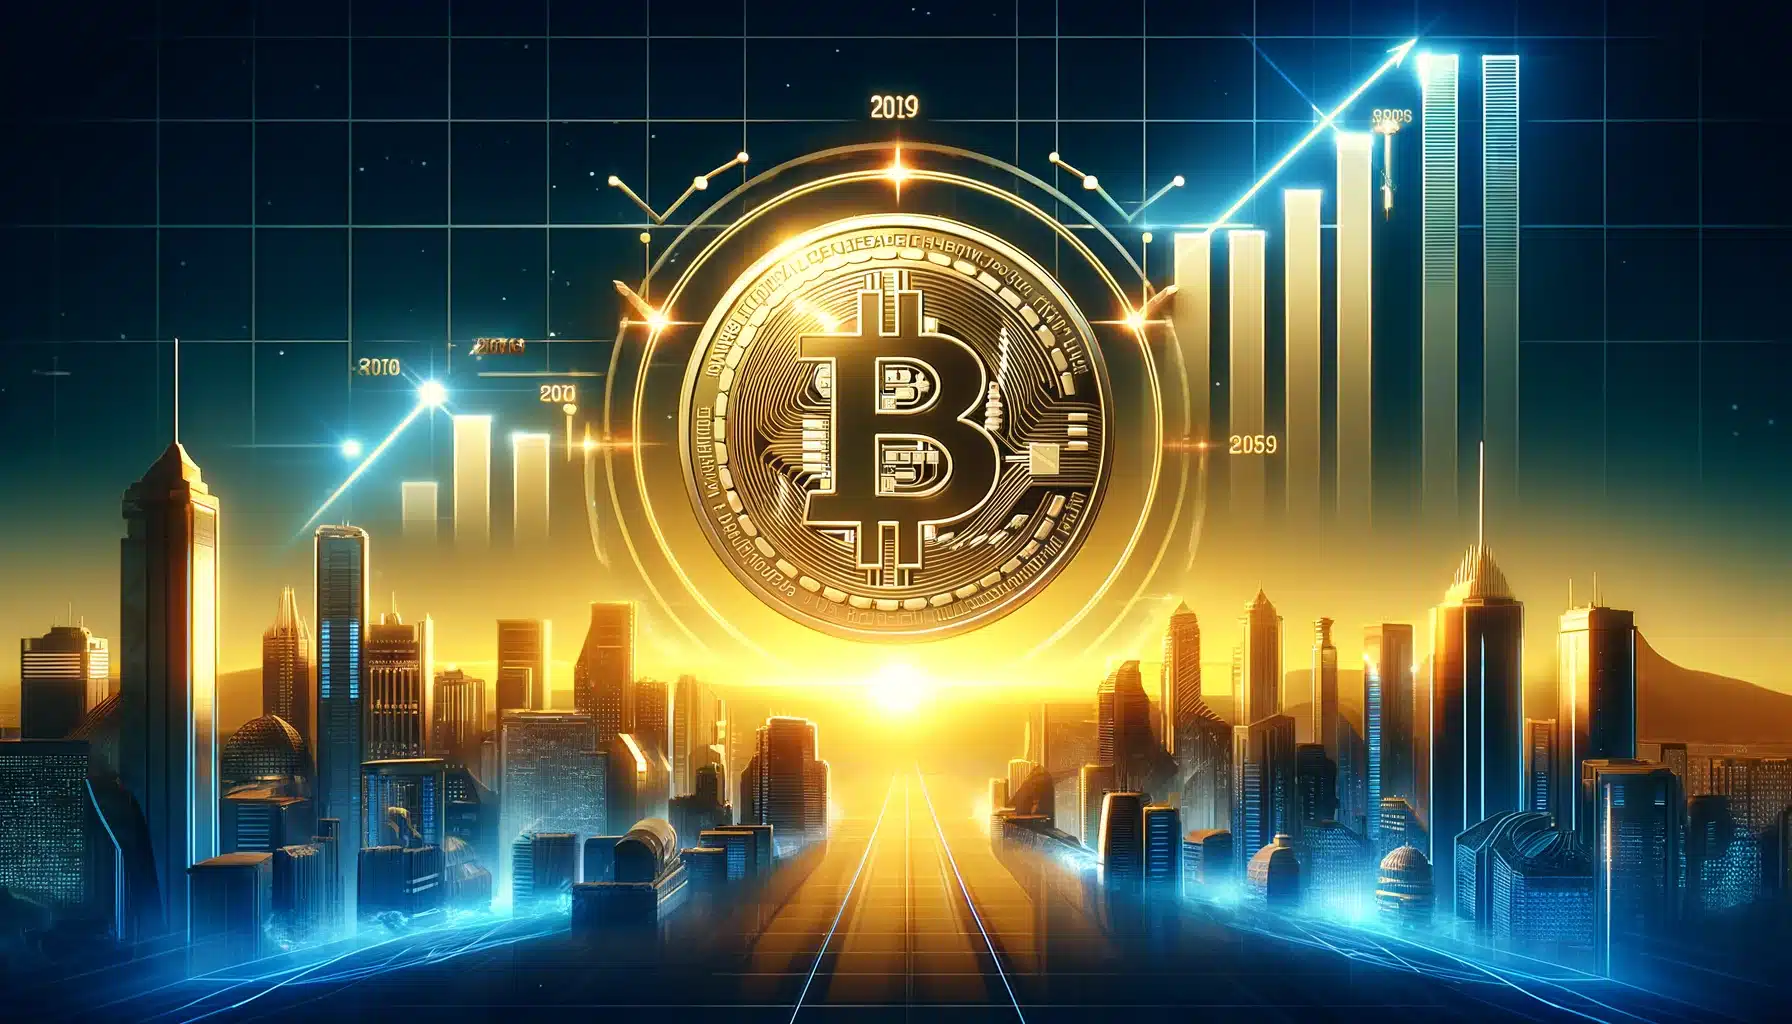 Jack Dorsey przewiduje, że cena Bitcoina osiągnie milion dolarów do 2030 roku